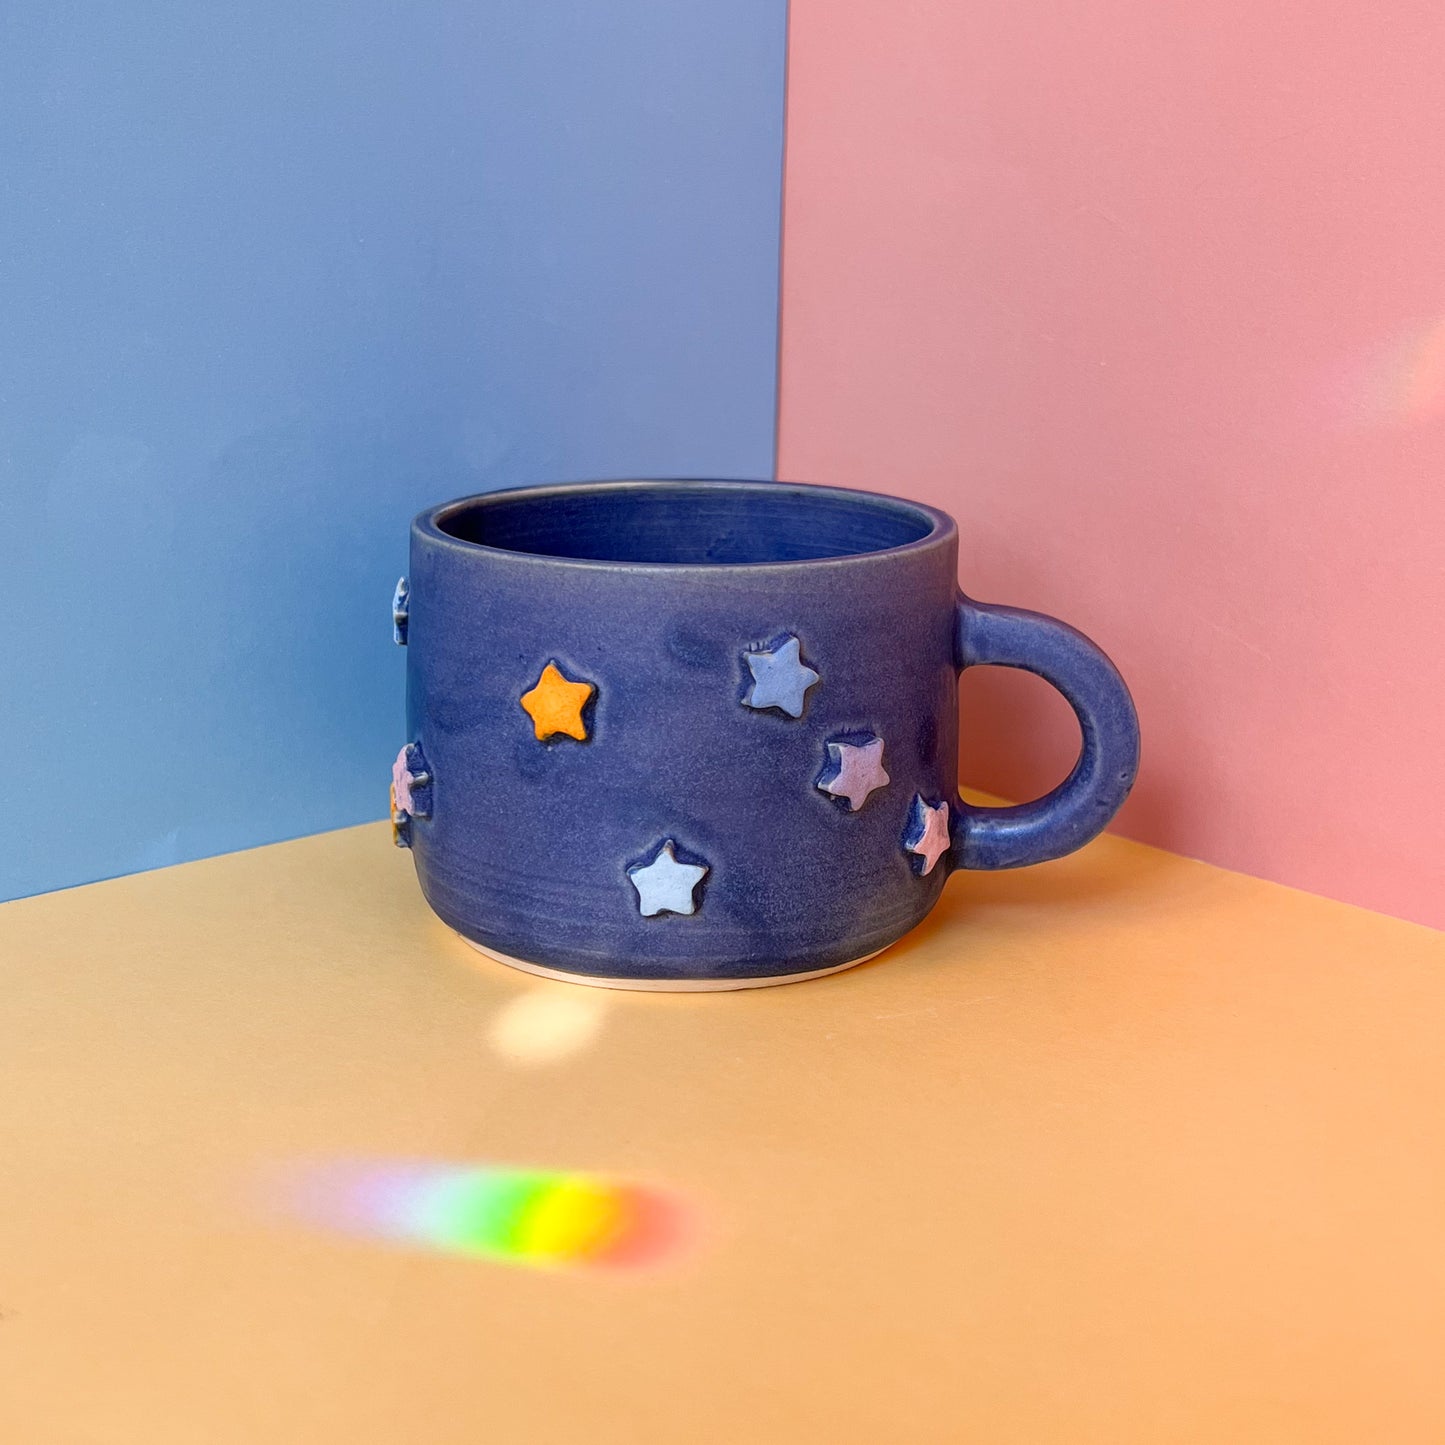 Starry mug